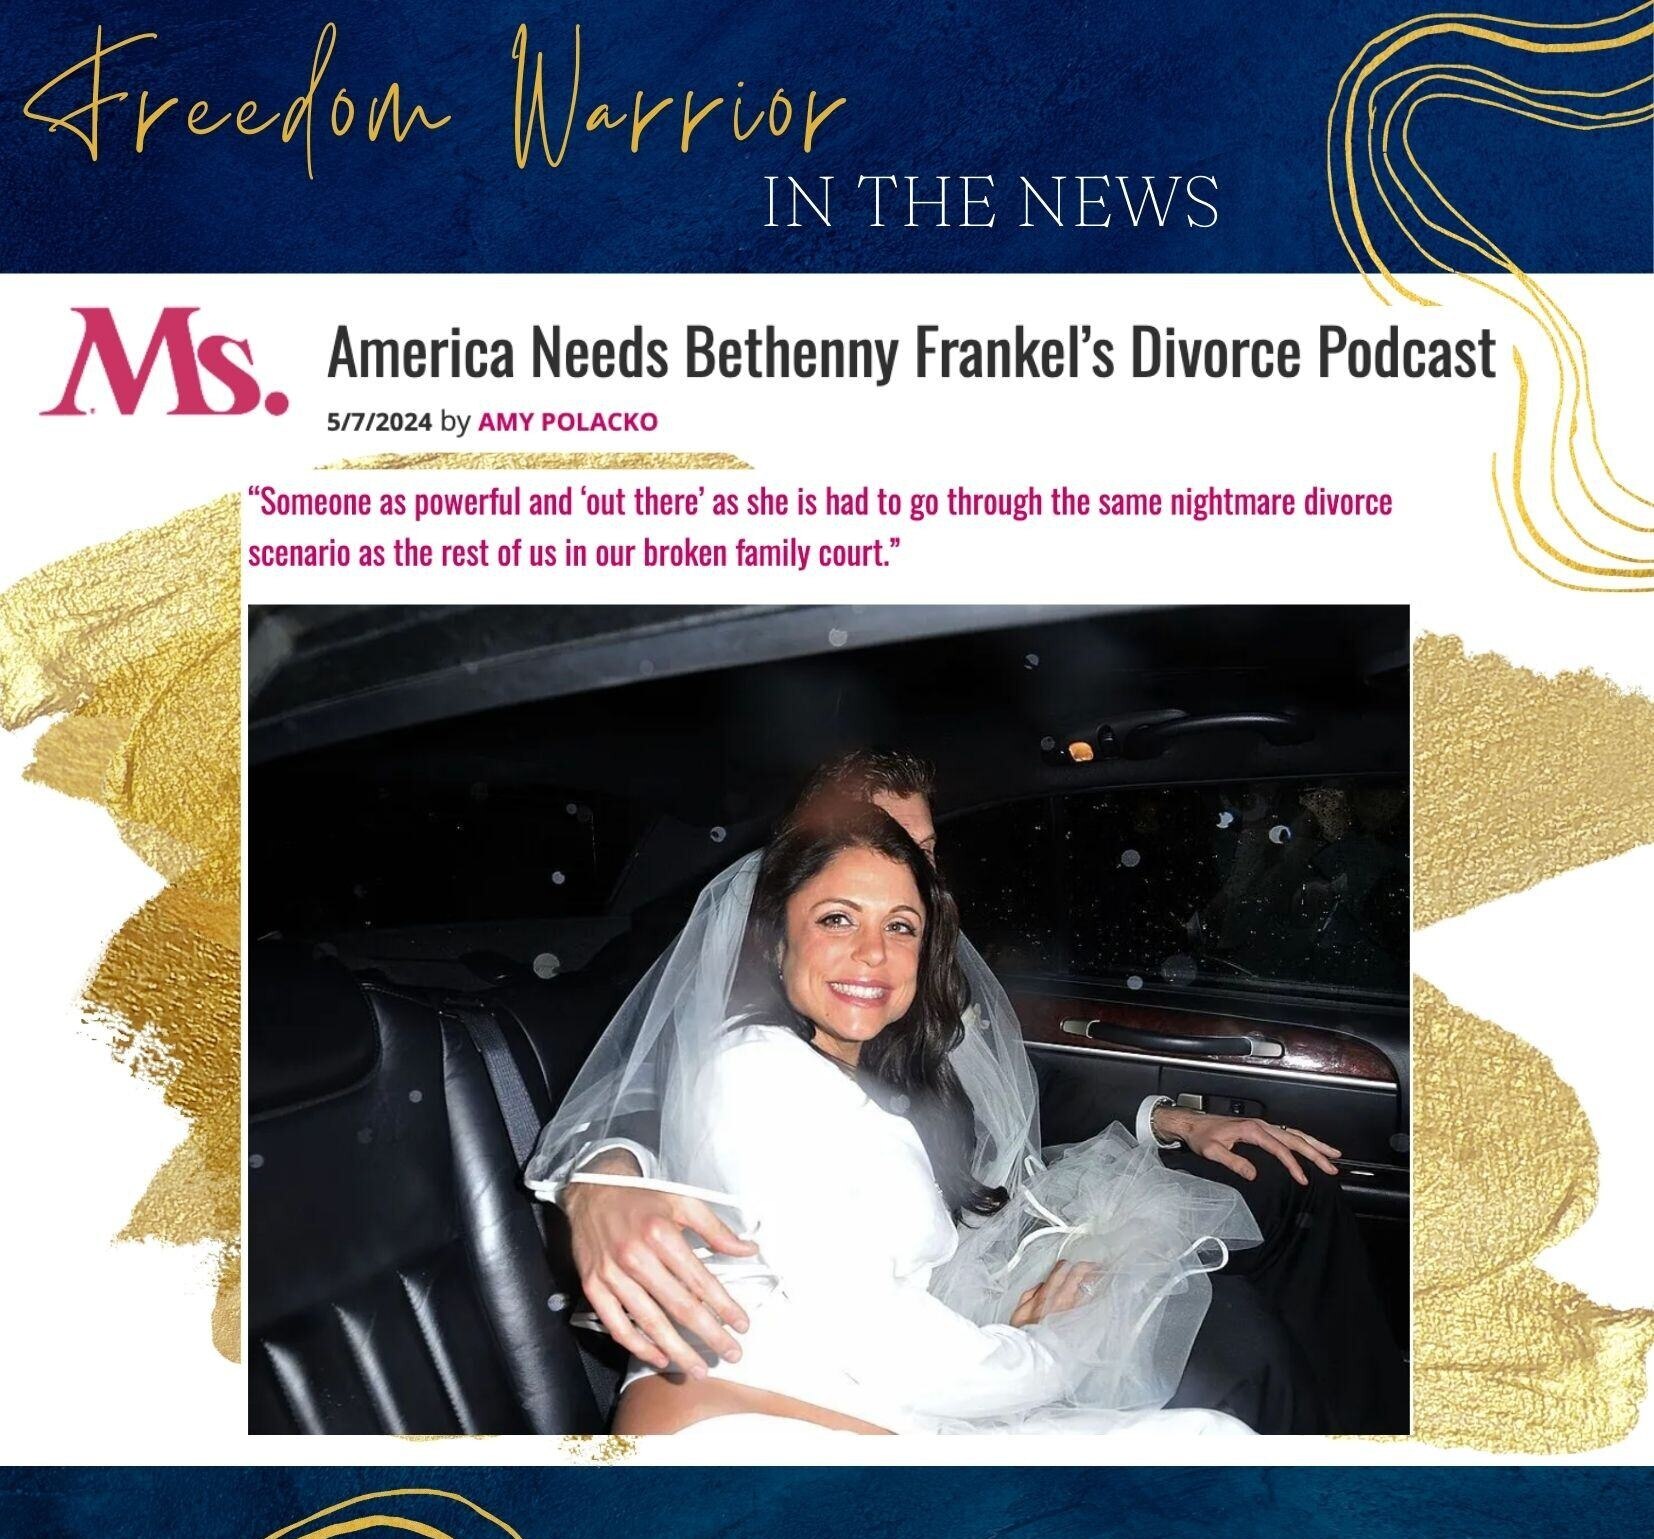 America Needs Bethenny Frankel’s Divorce Podcast